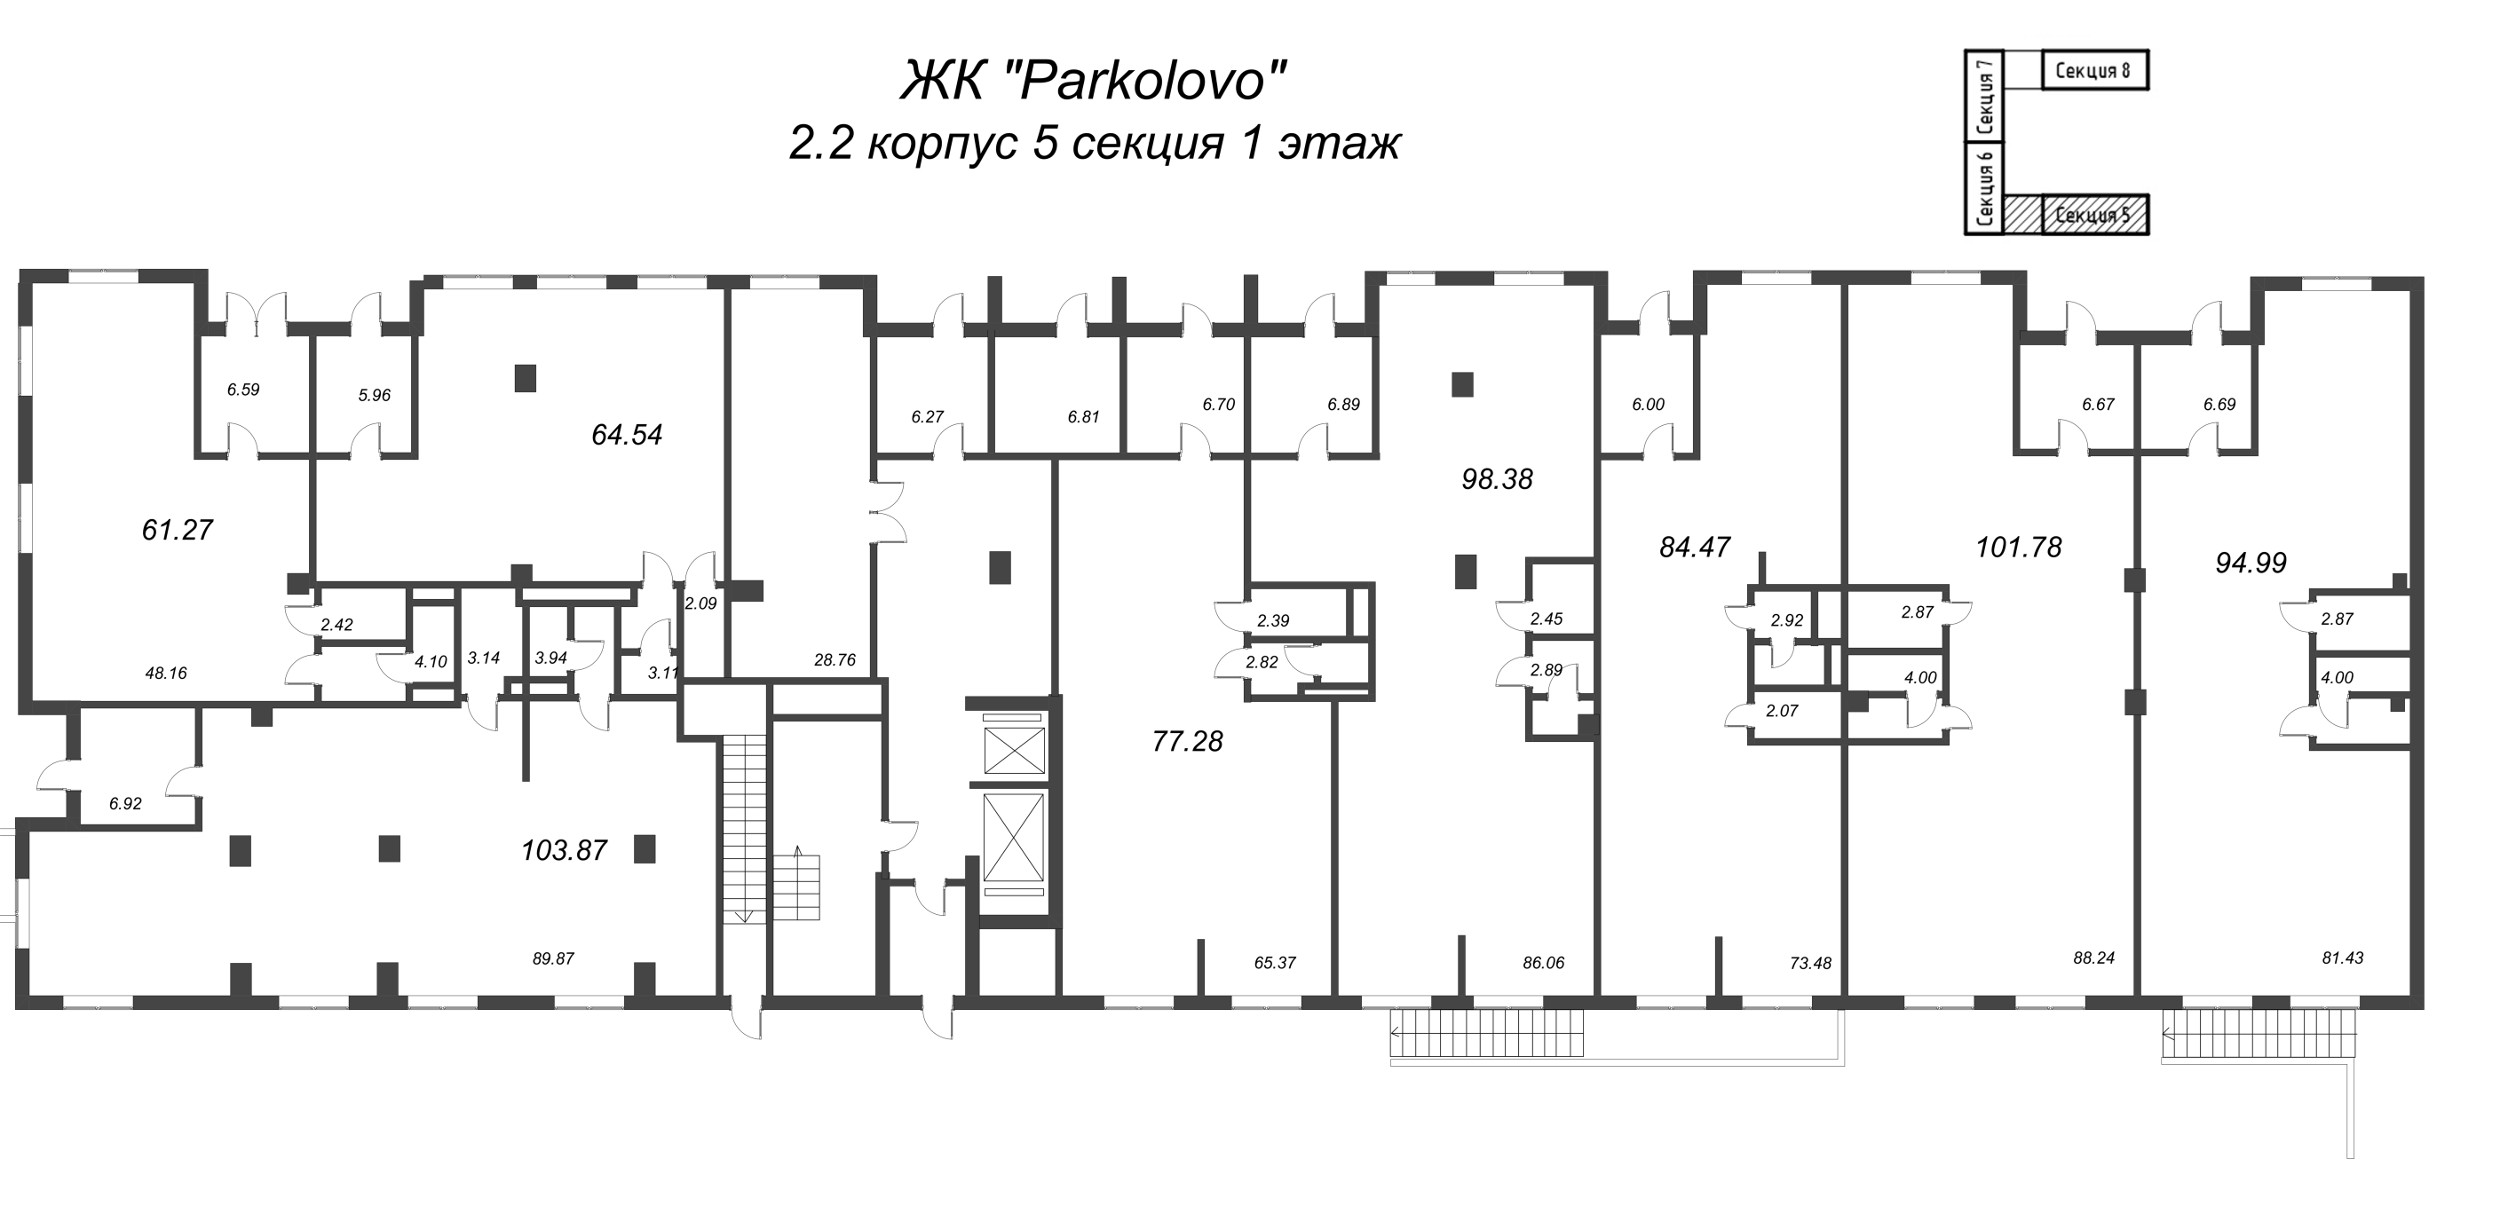 Помещение, 103.87 м² в ЖК "Parkolovo" - планировка этажа